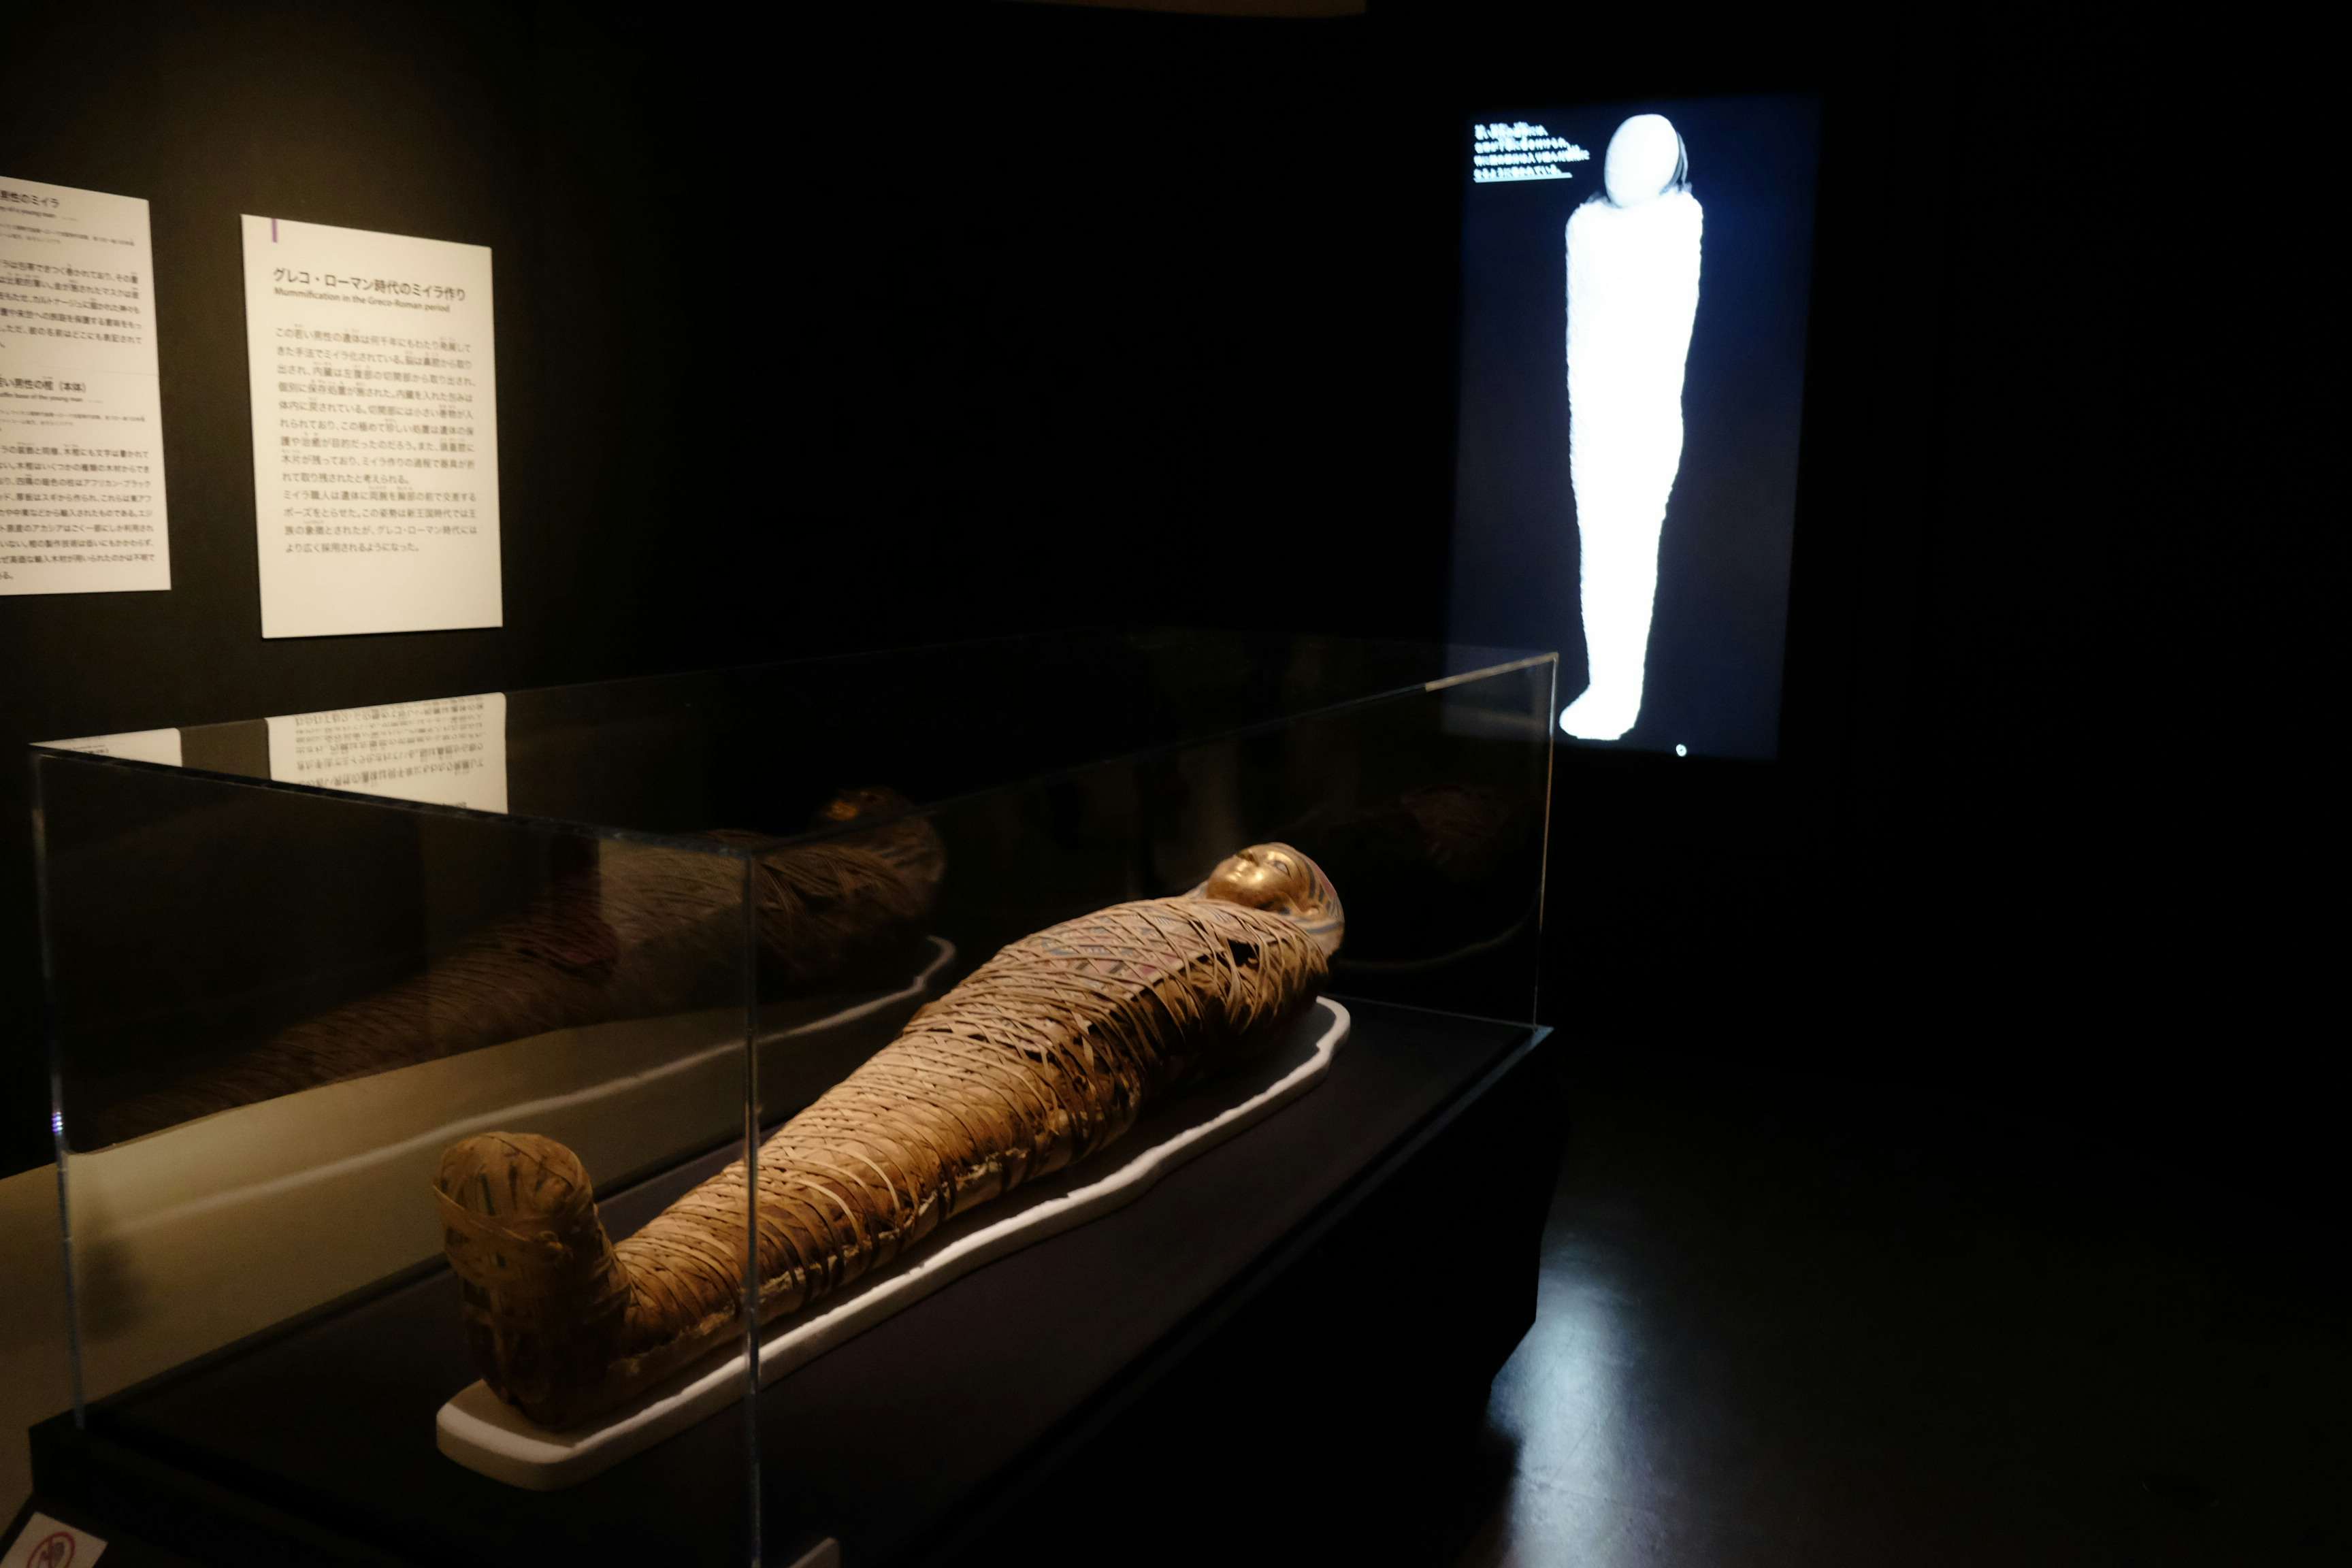 6体のミイラをctスキャンで解析 古代エジプト人の生き様を知る 大英博物館ミイラ展 古代エジプト6つの物語 が開幕 画像ギャラリー 30 35 美術手帖